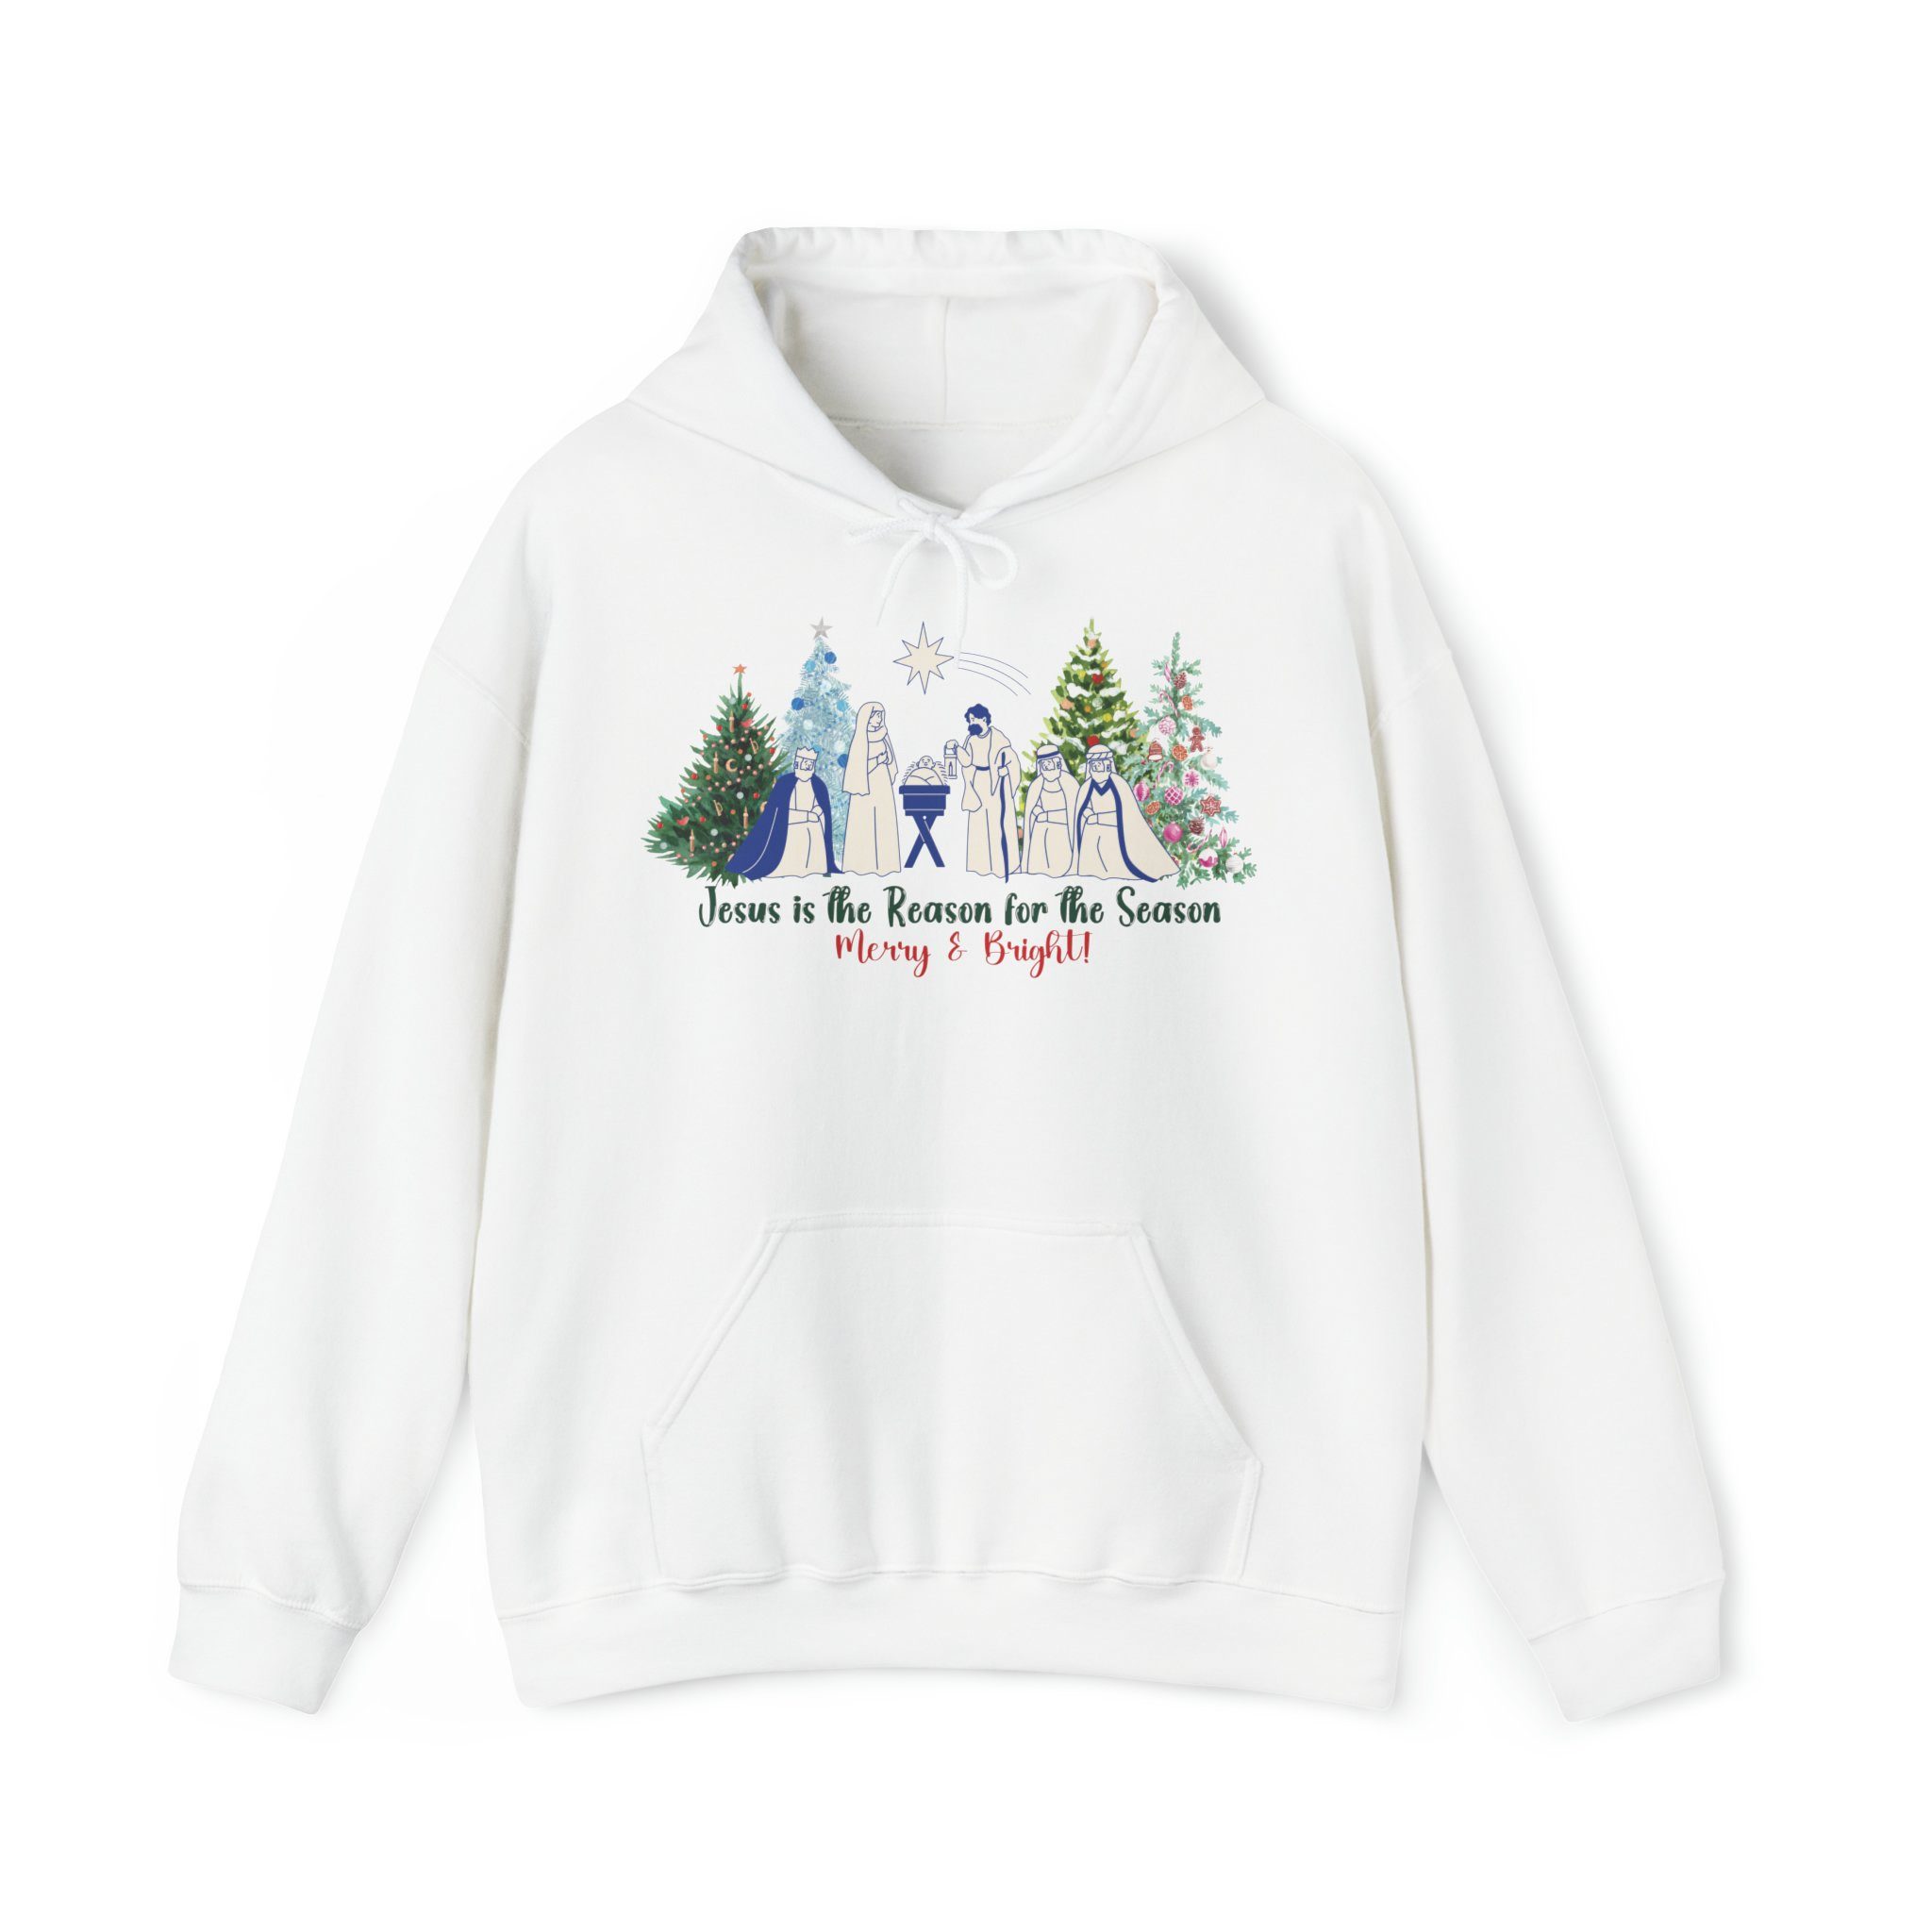 Season Reason for Weihnachtssweatshirt Jesus the is Elegance Hoodie Weihnachtssweatshirt the Quality